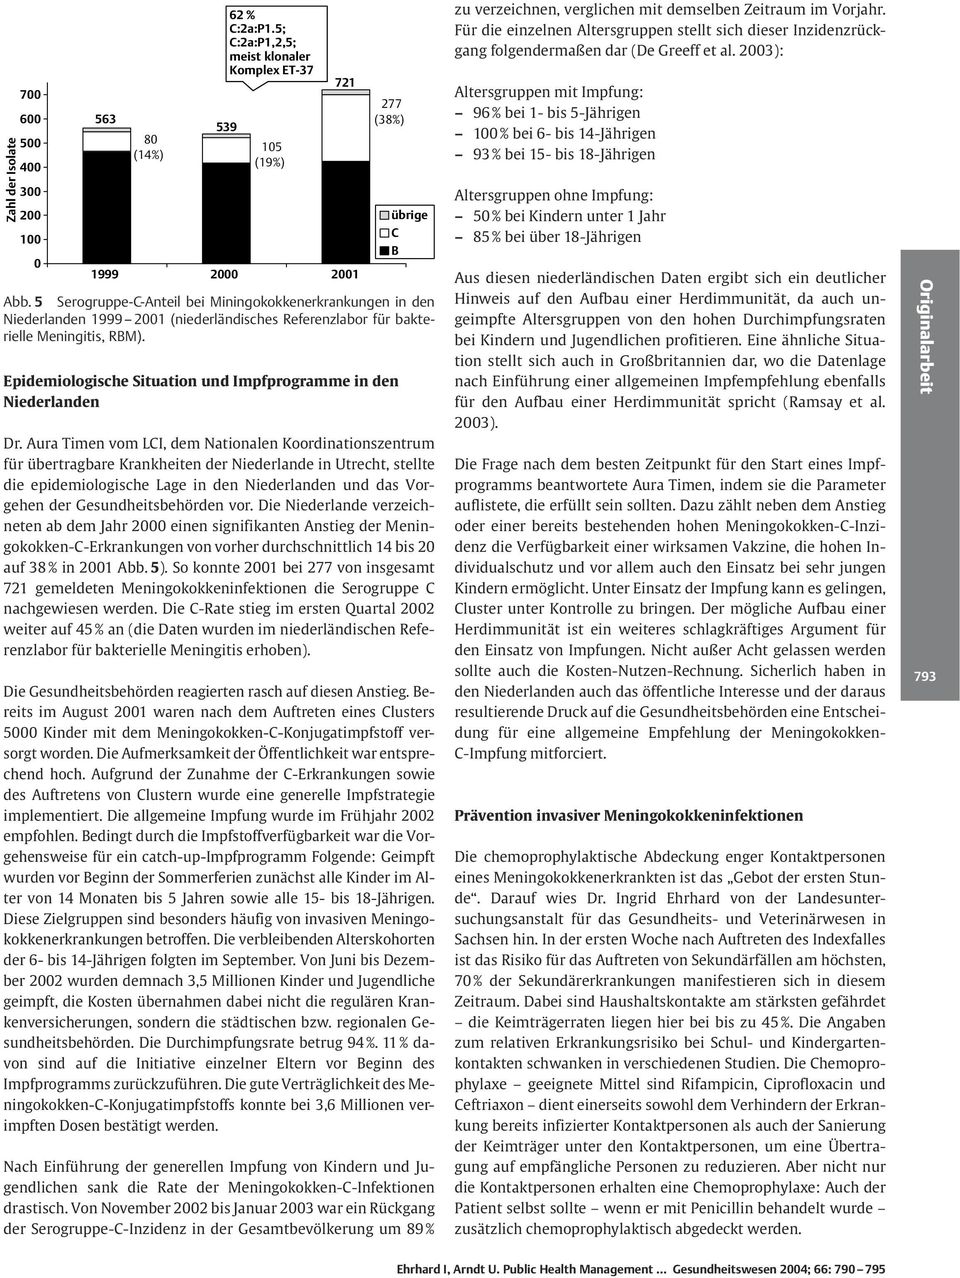 5 Serogruppe-C-Anteil bei Miningokokkenerkrankungen in den Niederlanden 1999 2001 (niederländisches Referenzlabor für bakterielle Meningitis, RM). Dr.